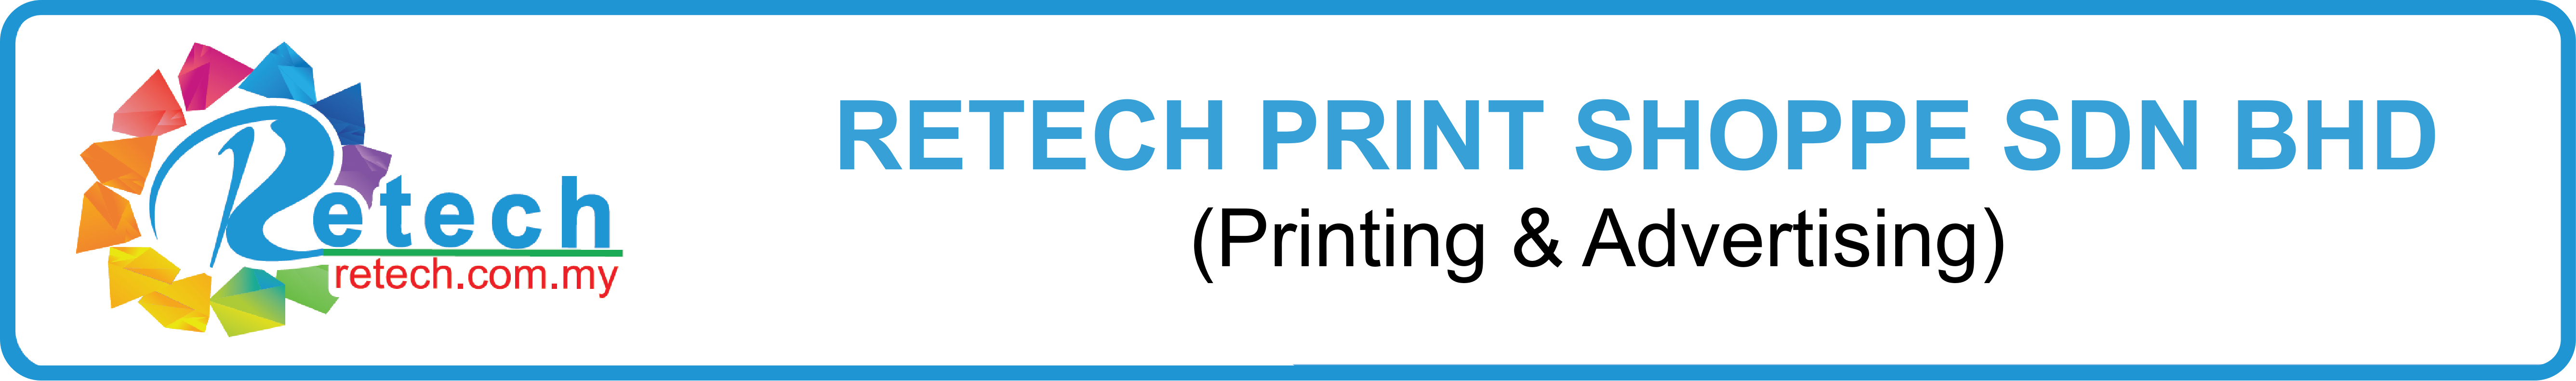 retech-group-printing